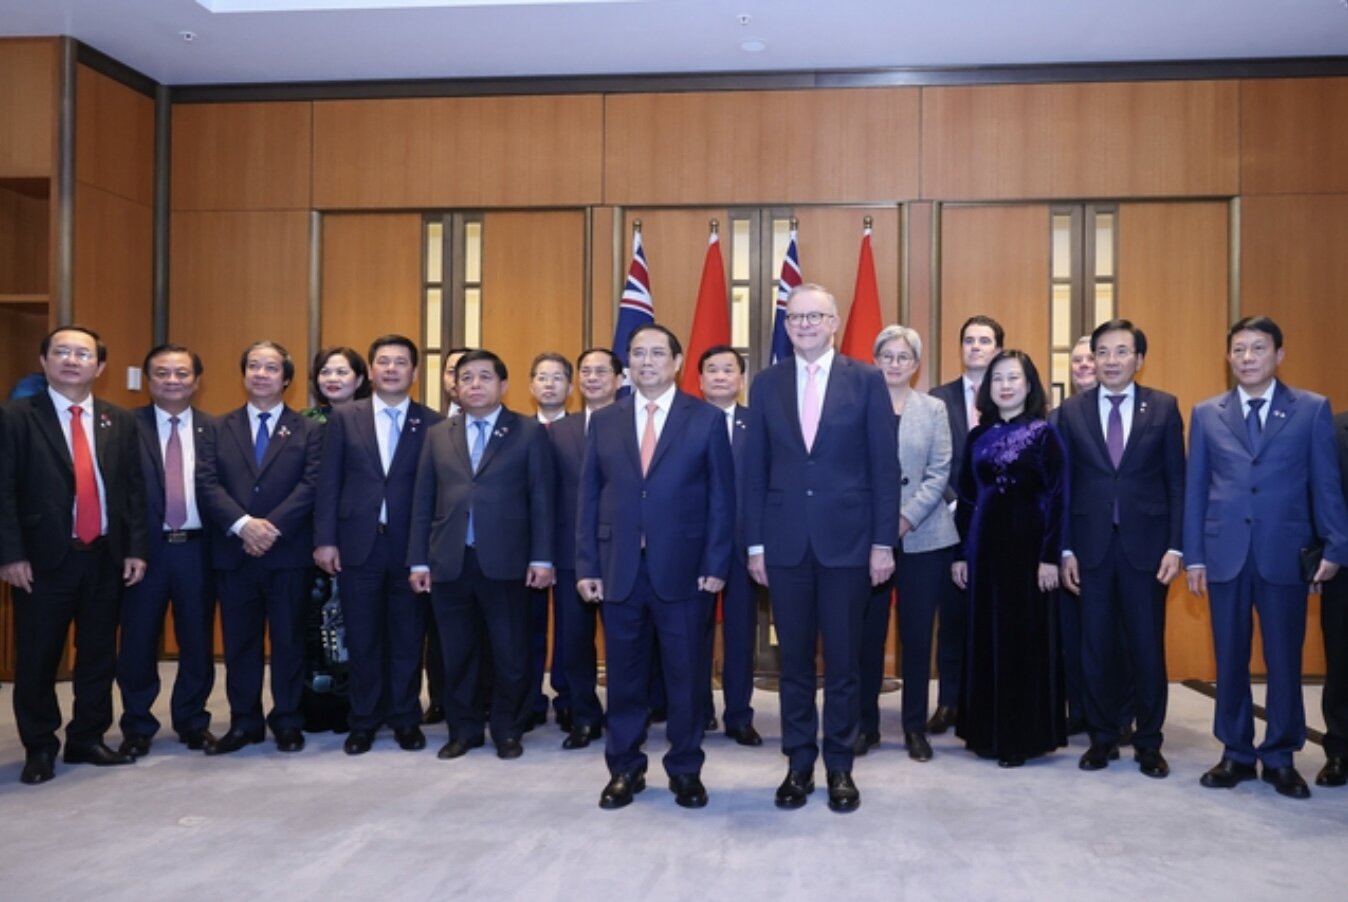 Thủ tướng Chính phủ Phạm Minh Chính và Thủ tướng Australia Anthony Albanese chứng kiến lễ ký kết, trao đổi các văn kiện hợp tác giữa lãnh đạo các bộ ngành, cơ quan hai nước. Ảnh: VGP